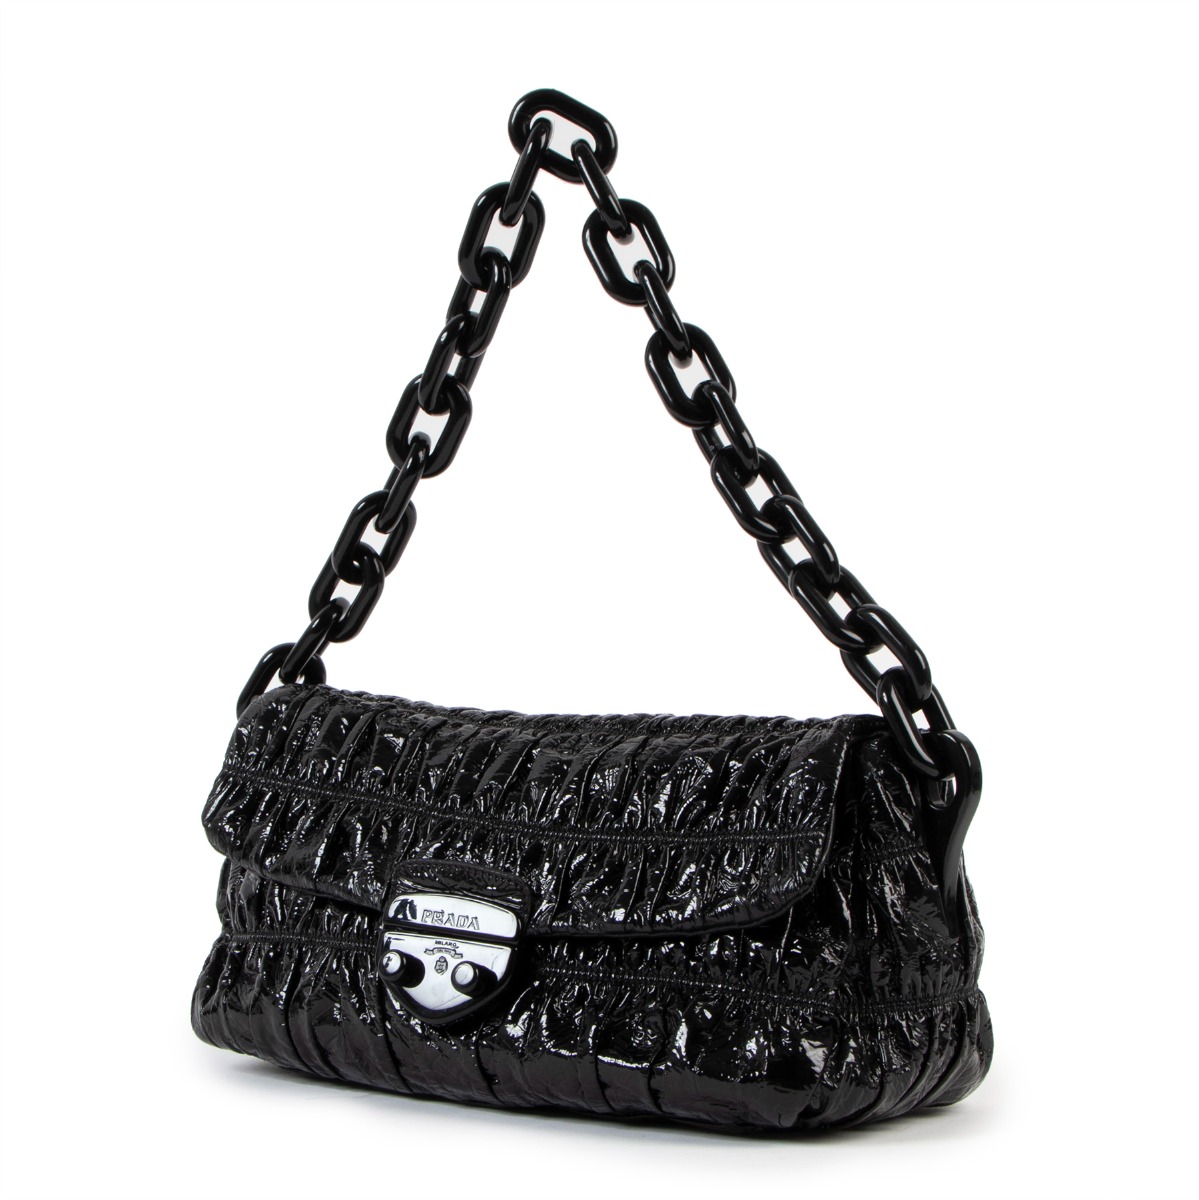 Prada Vitello Shine Vernice Chain Shoulder Bag – Just Gorgeous